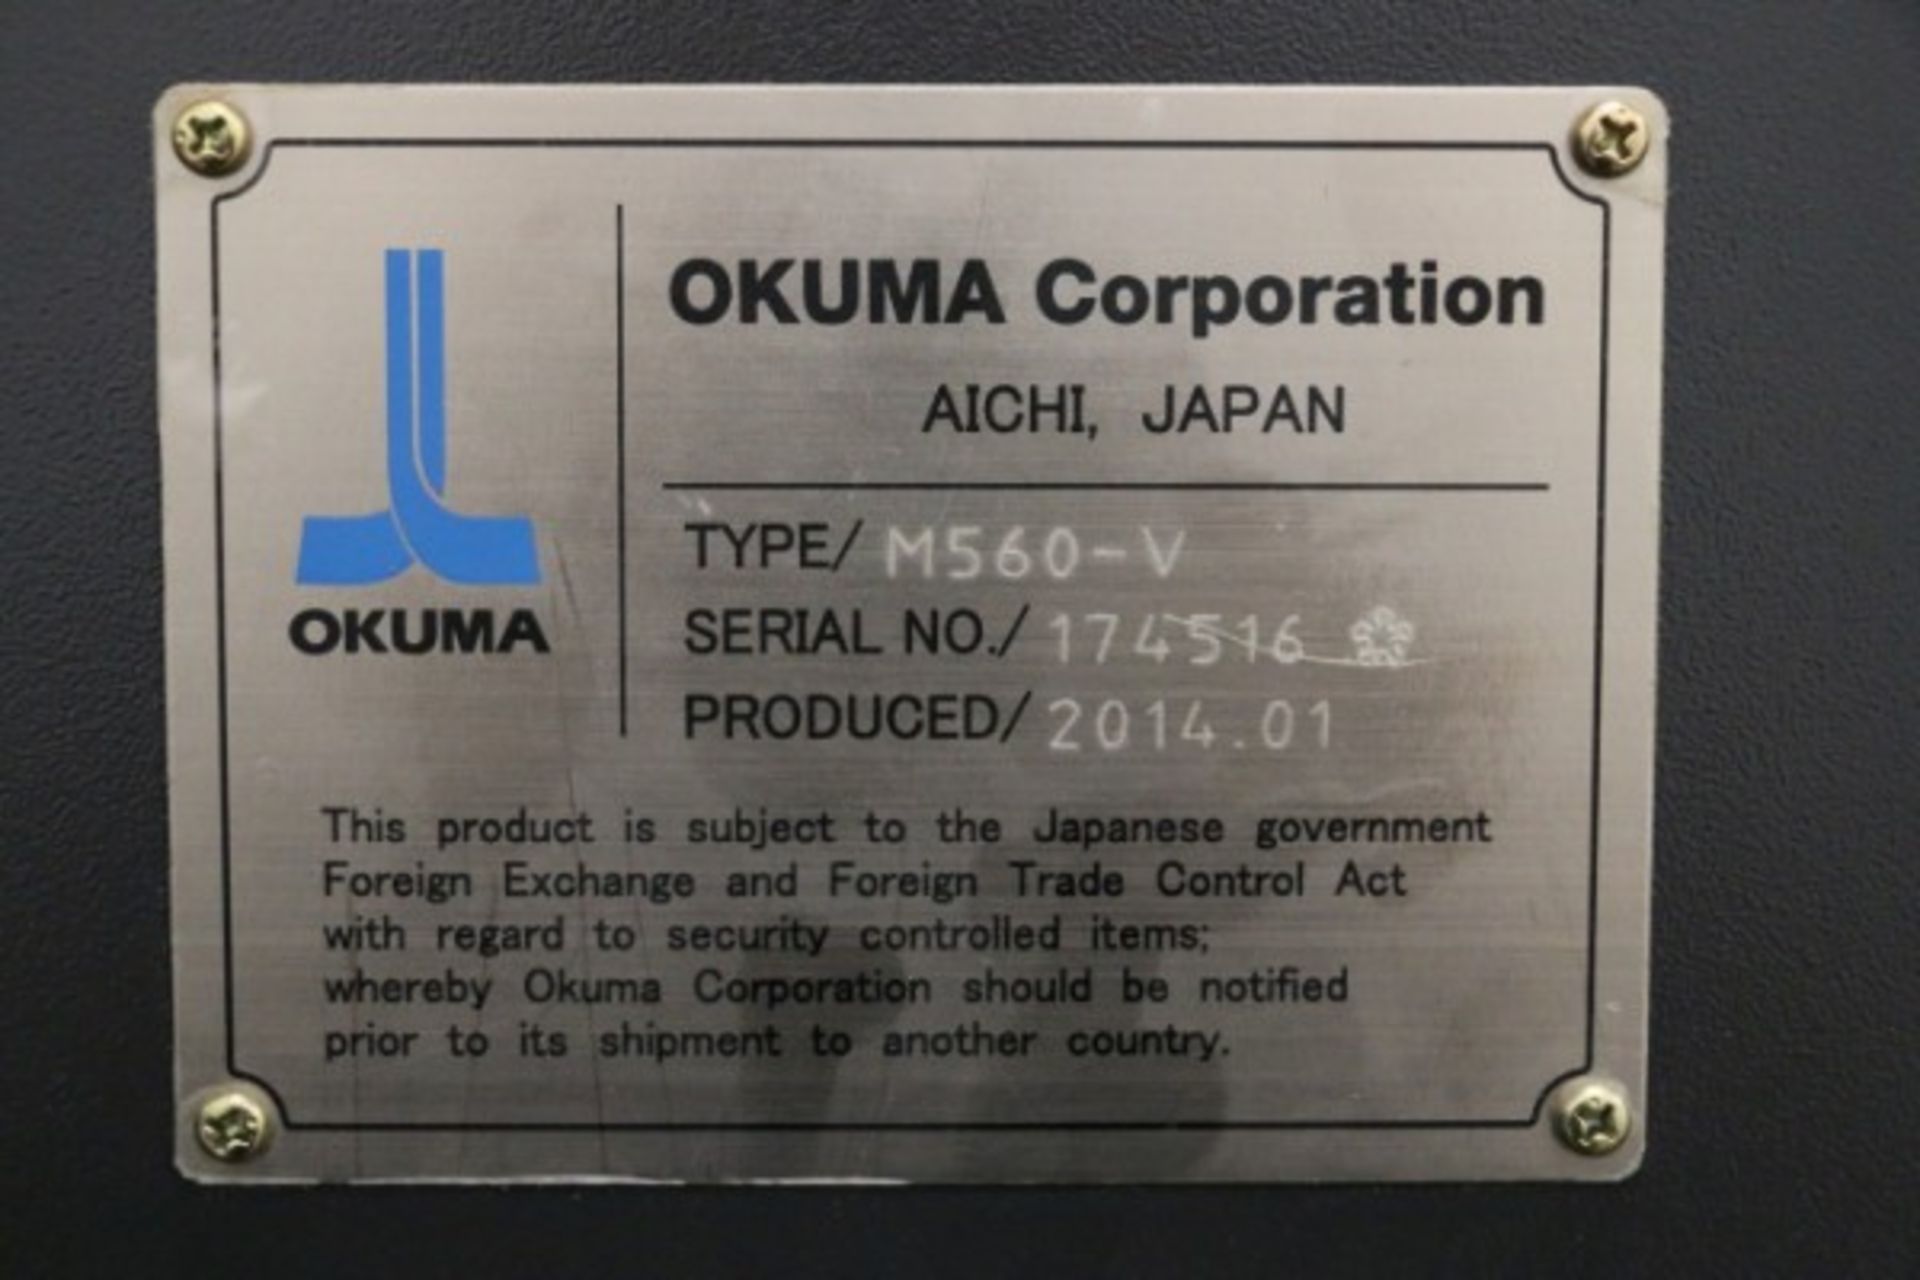 Okuma Genos M560-V, Okuma OSP-P300M Control, S/N 174516, 2038 Cutting Hours, New 2014 - Image 11 of 11